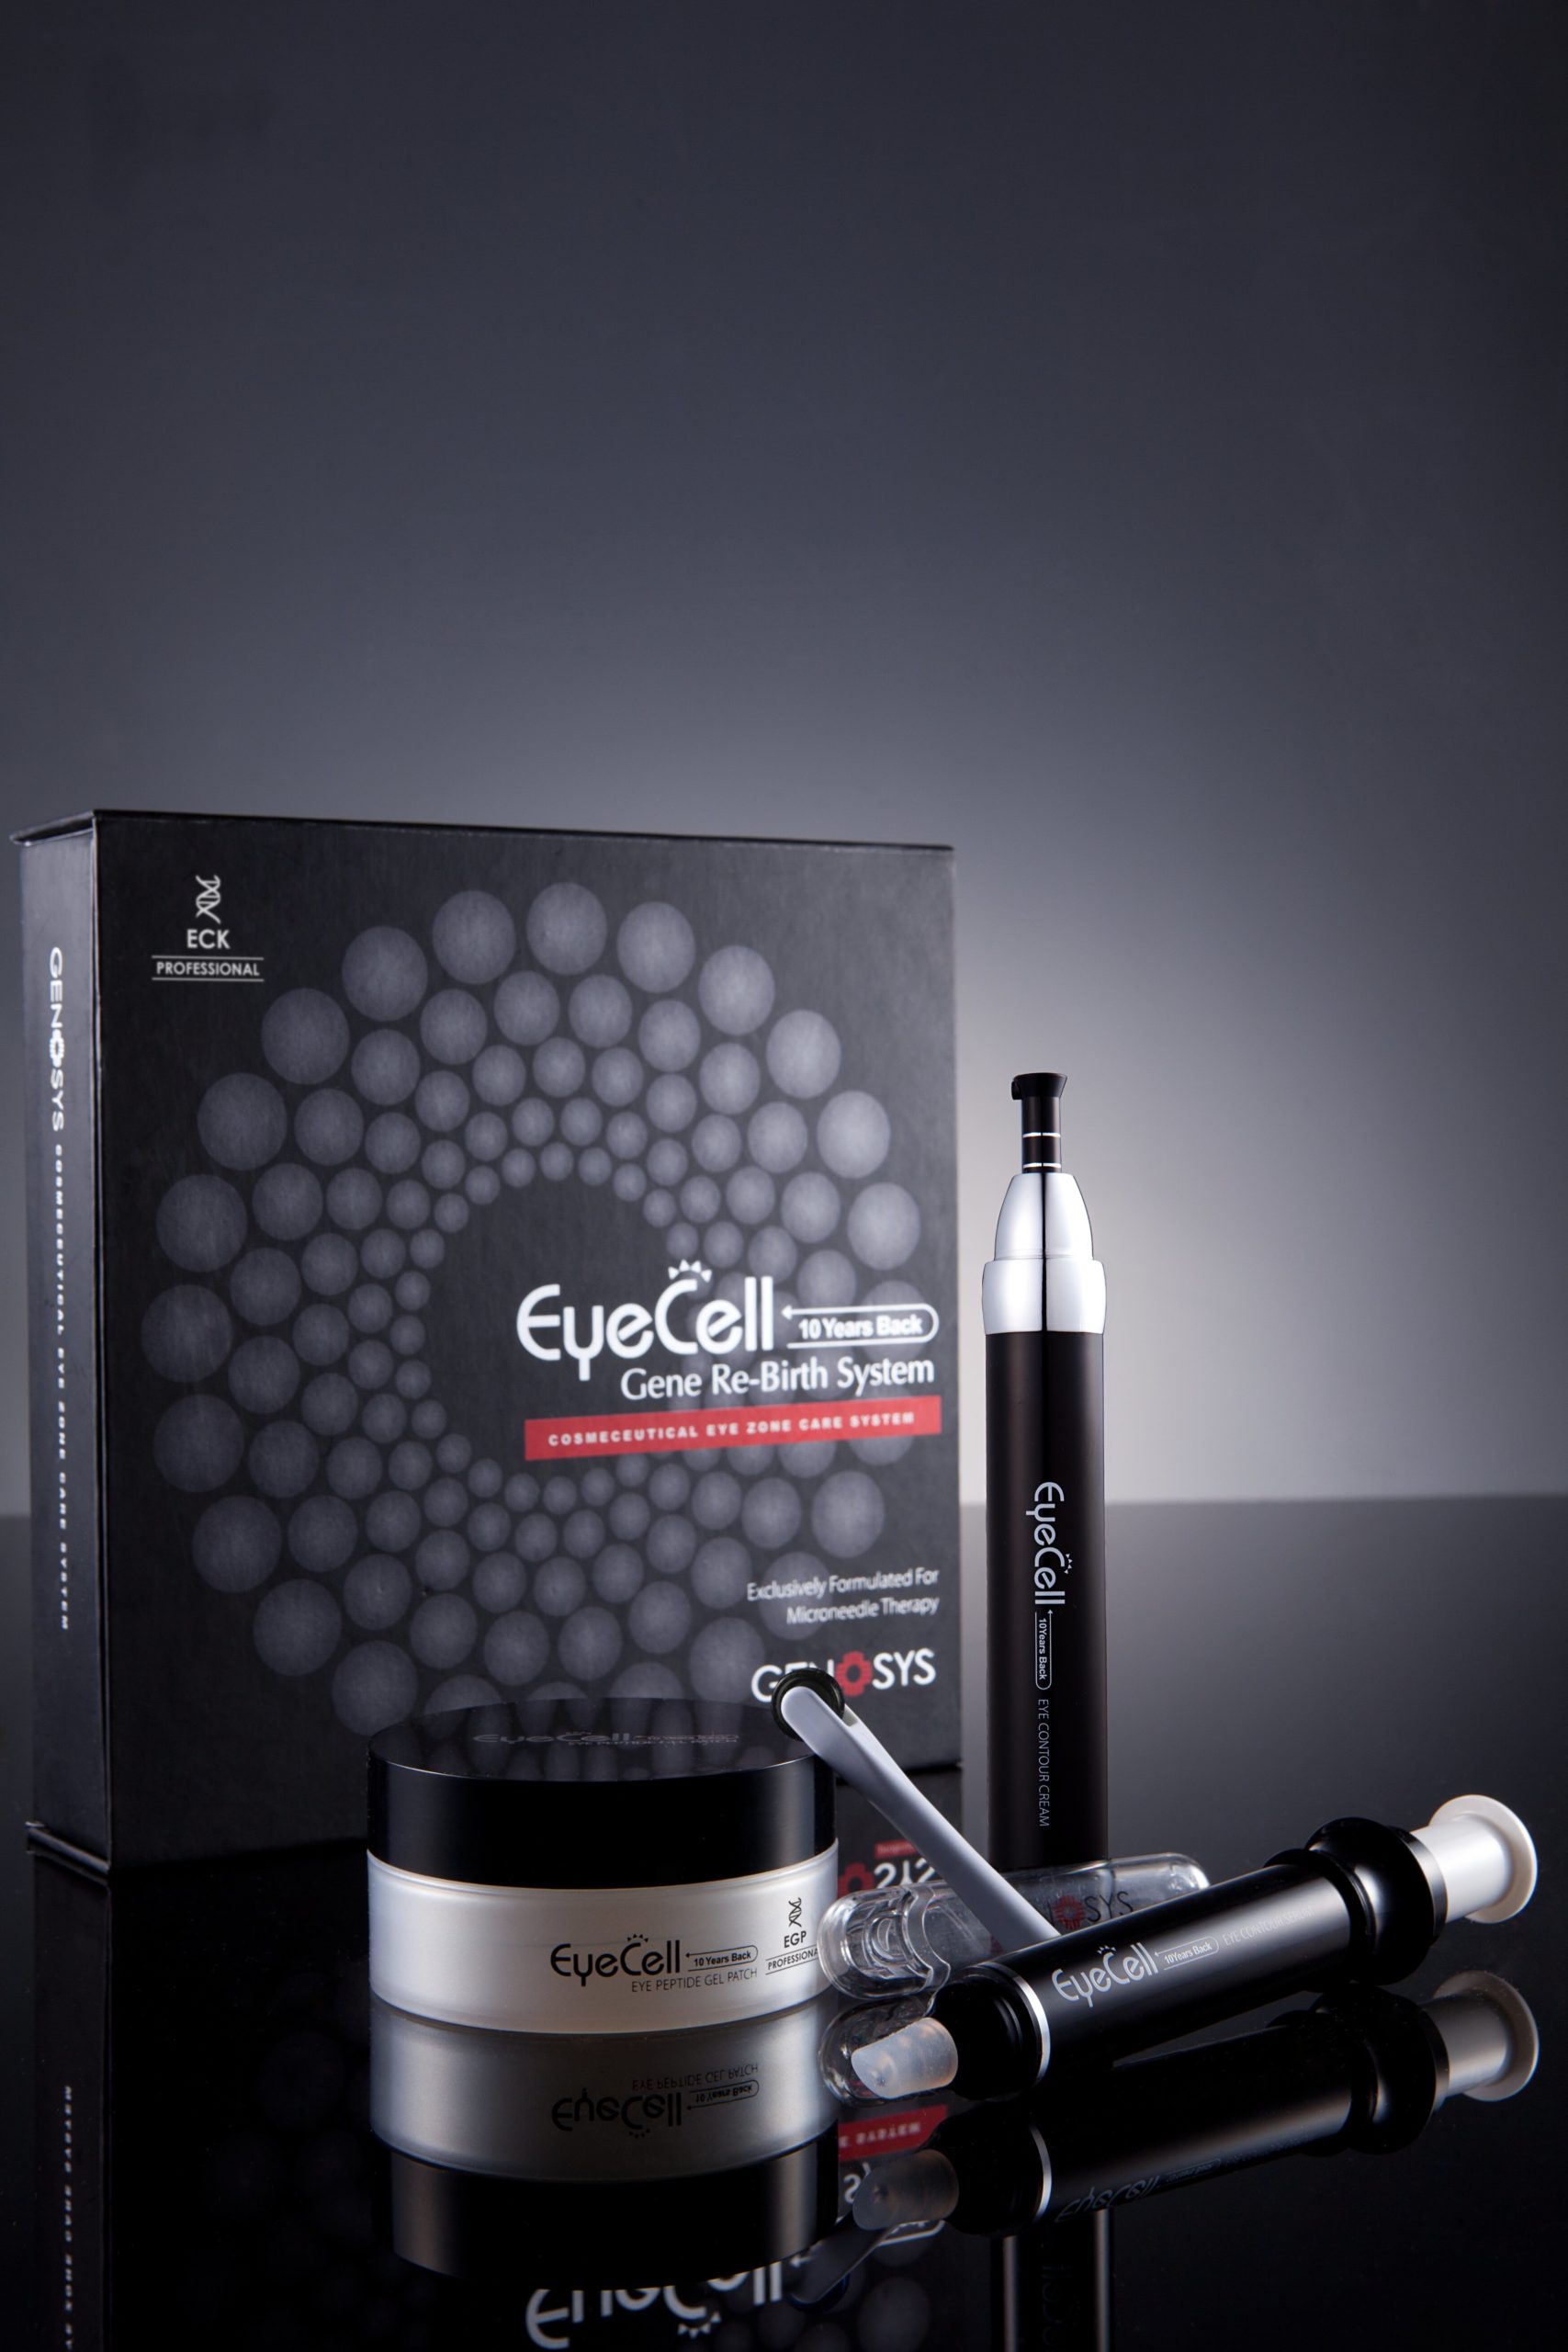 Eyecell Eye Zone Care Kit Набор для ухода за областью вокруг глаз